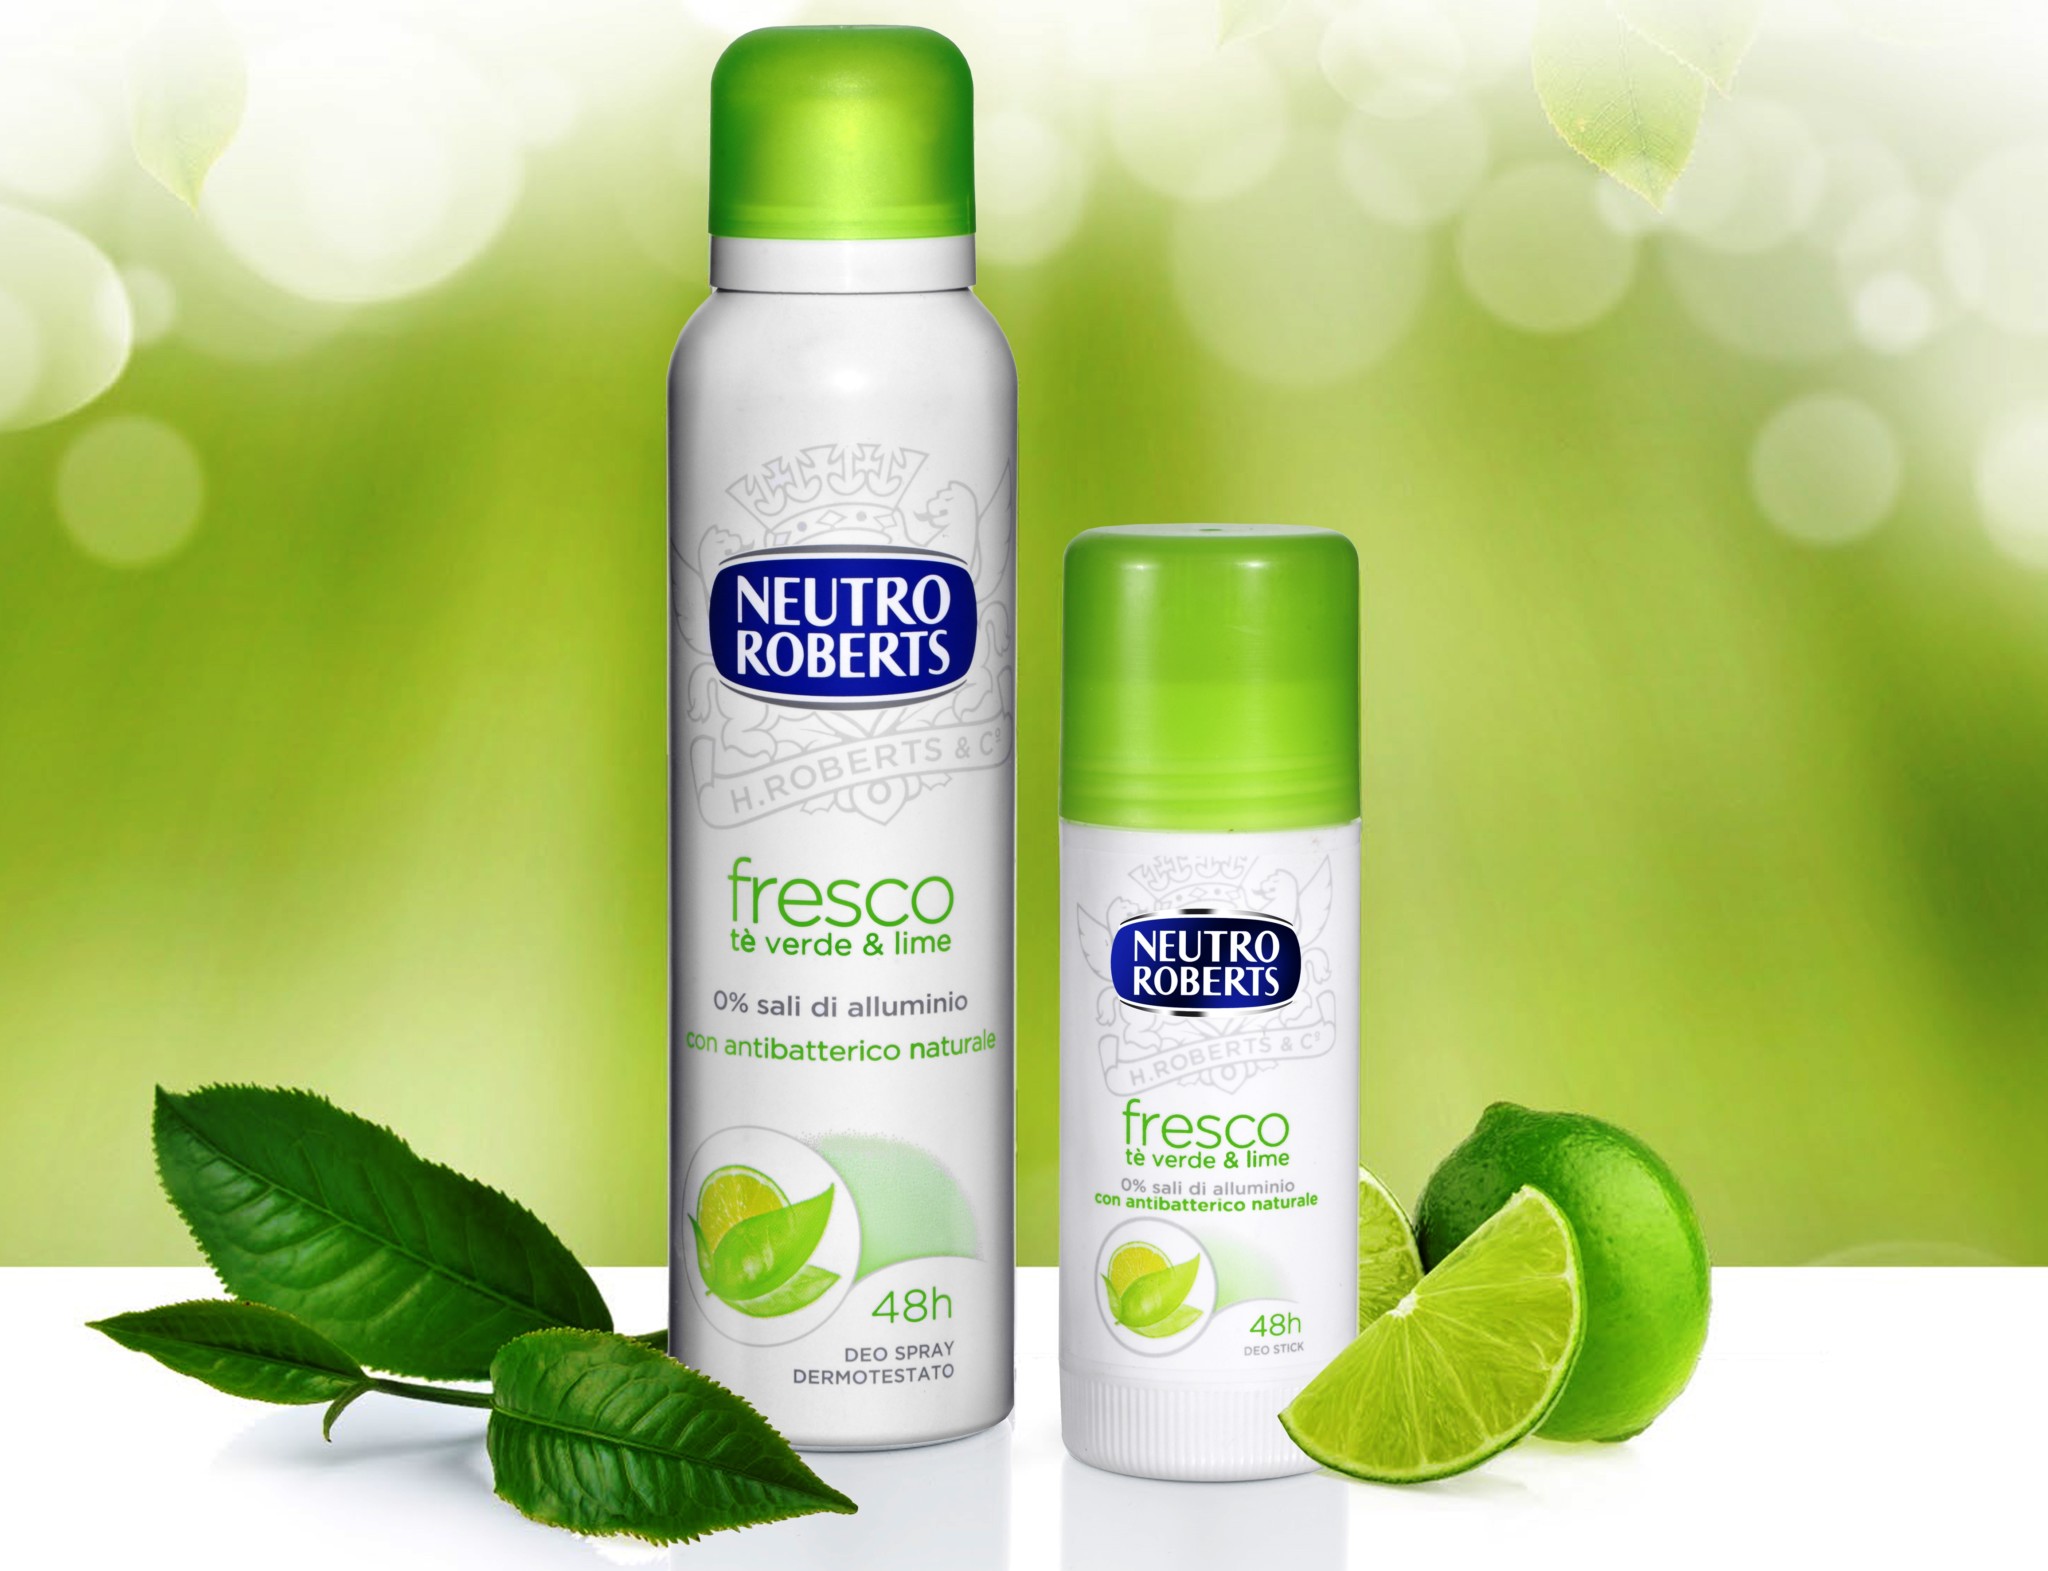 Neutro Roberts: nuova linea Deodorante Fresco al Té Verde & Lime